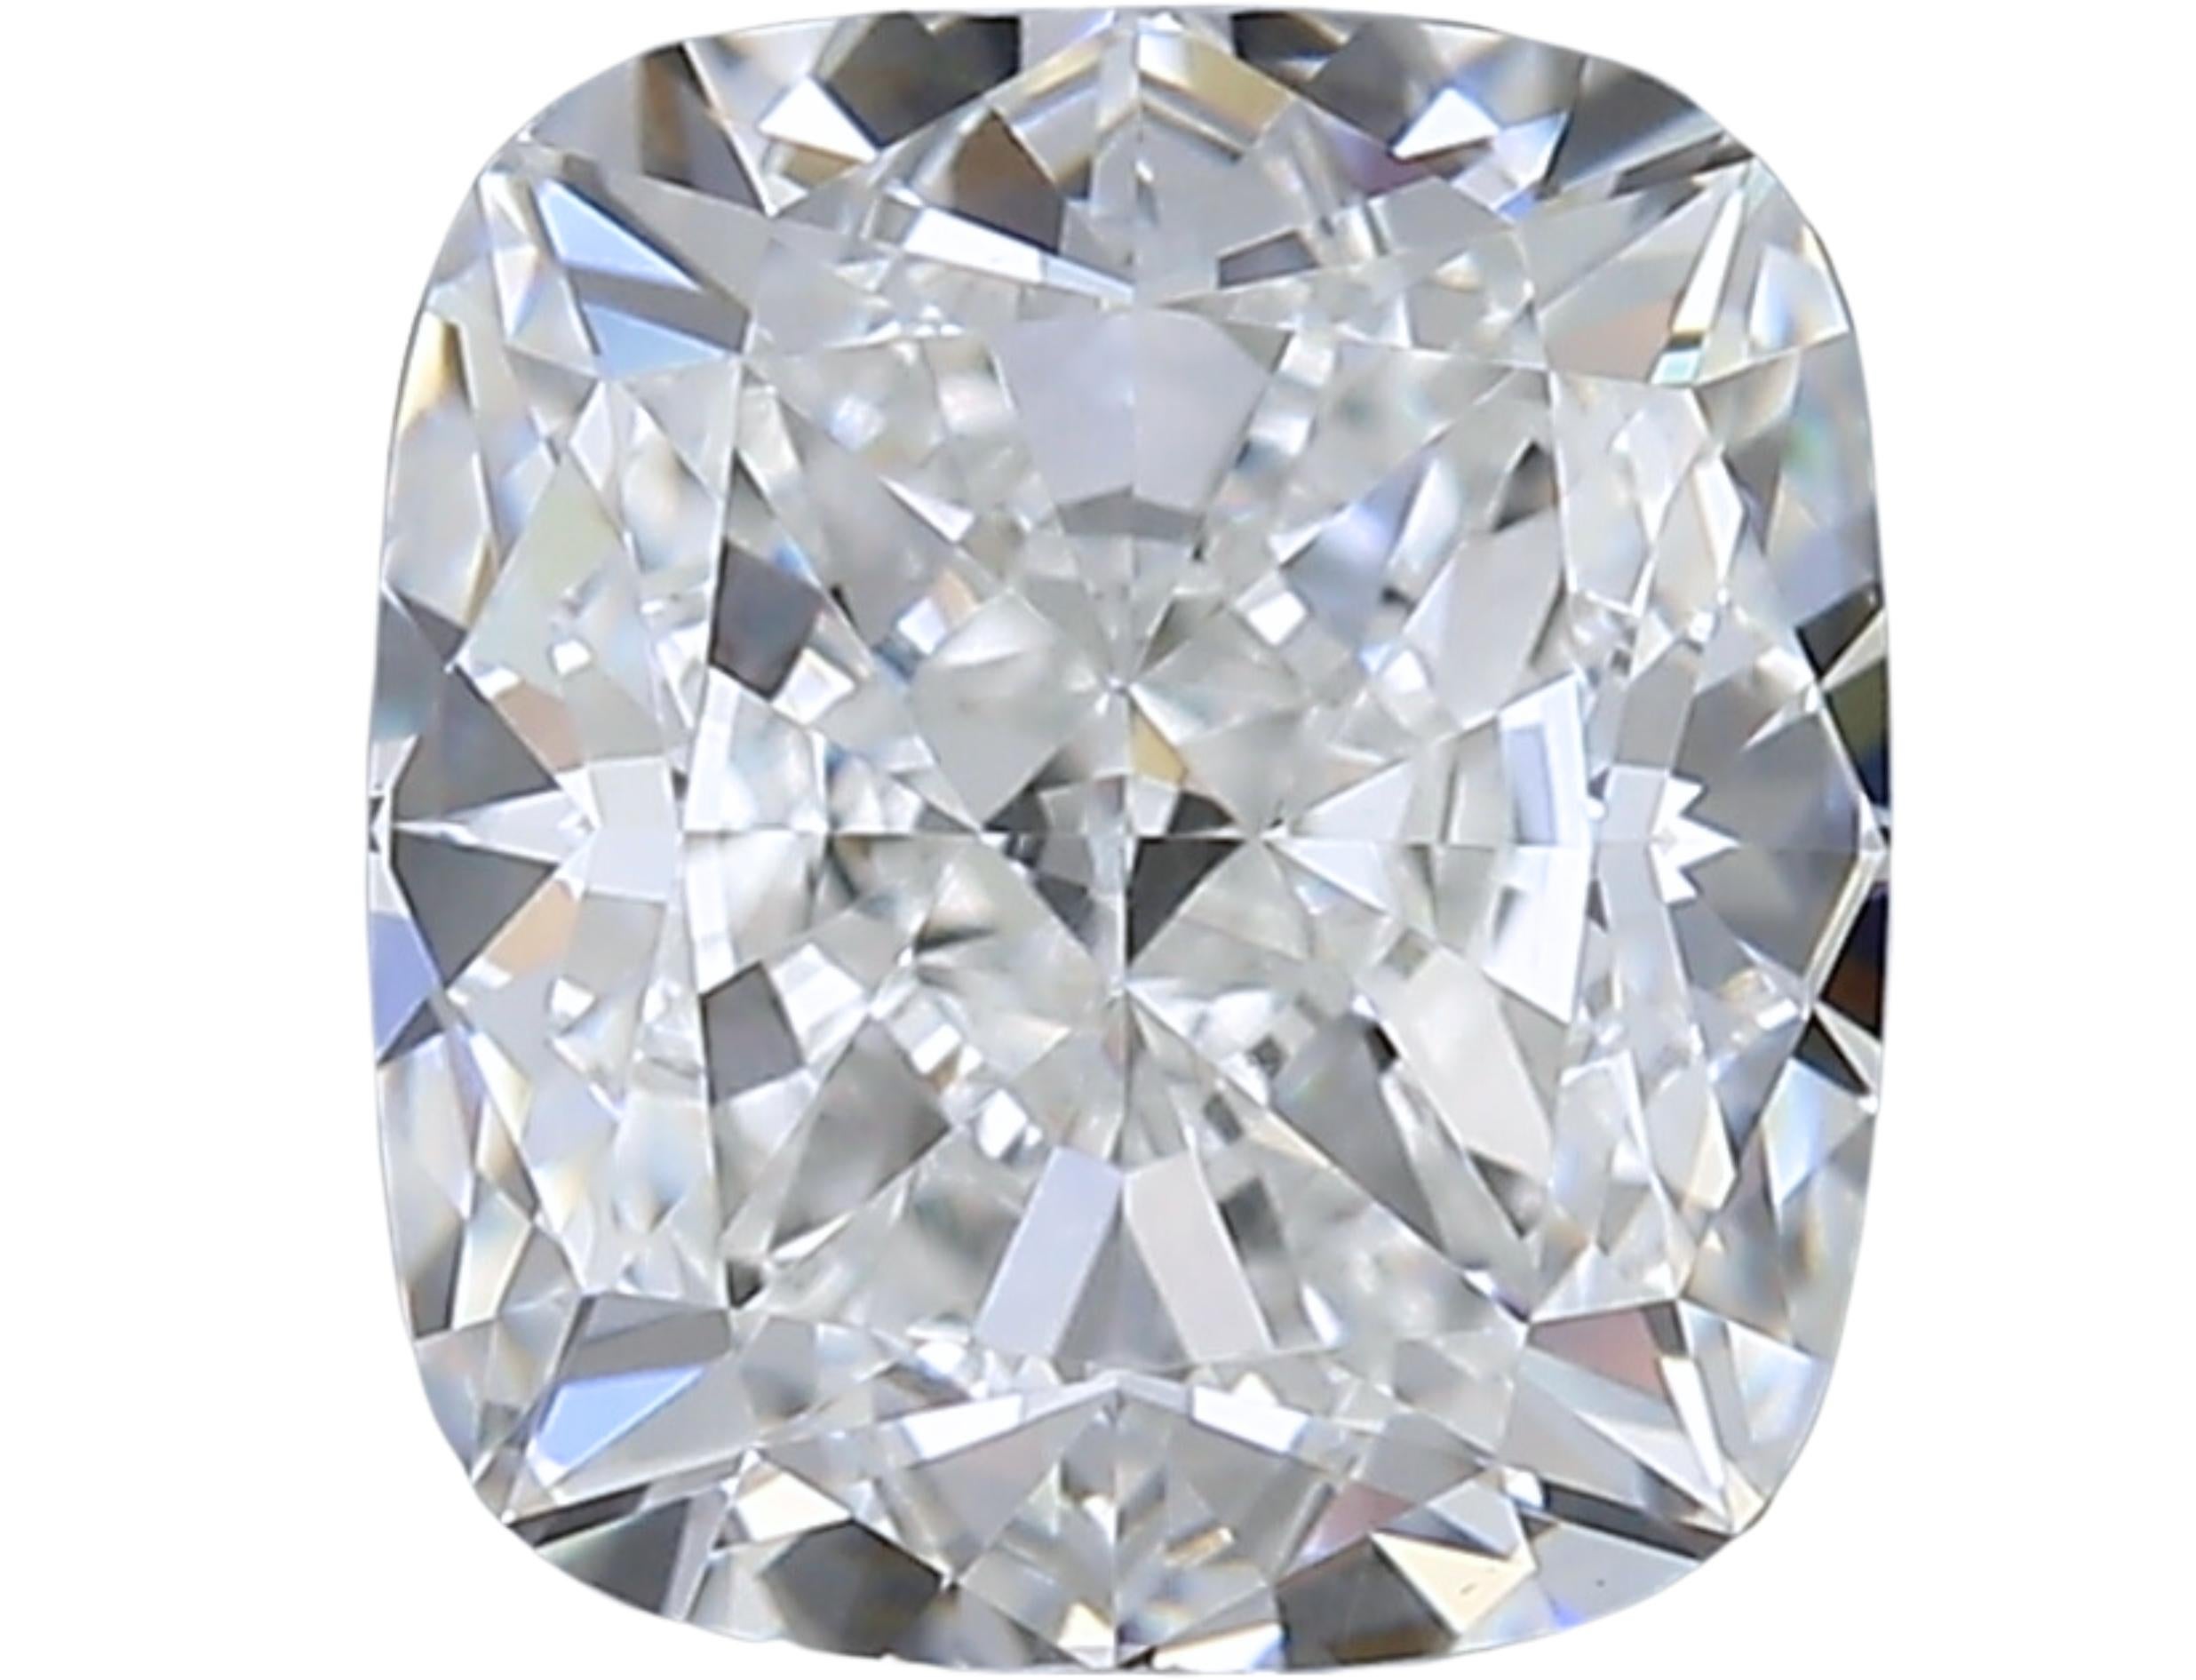 Cushion Cut 1pc Glamorous Natural cut Cushion diamond in a 1.15 carat For Sale